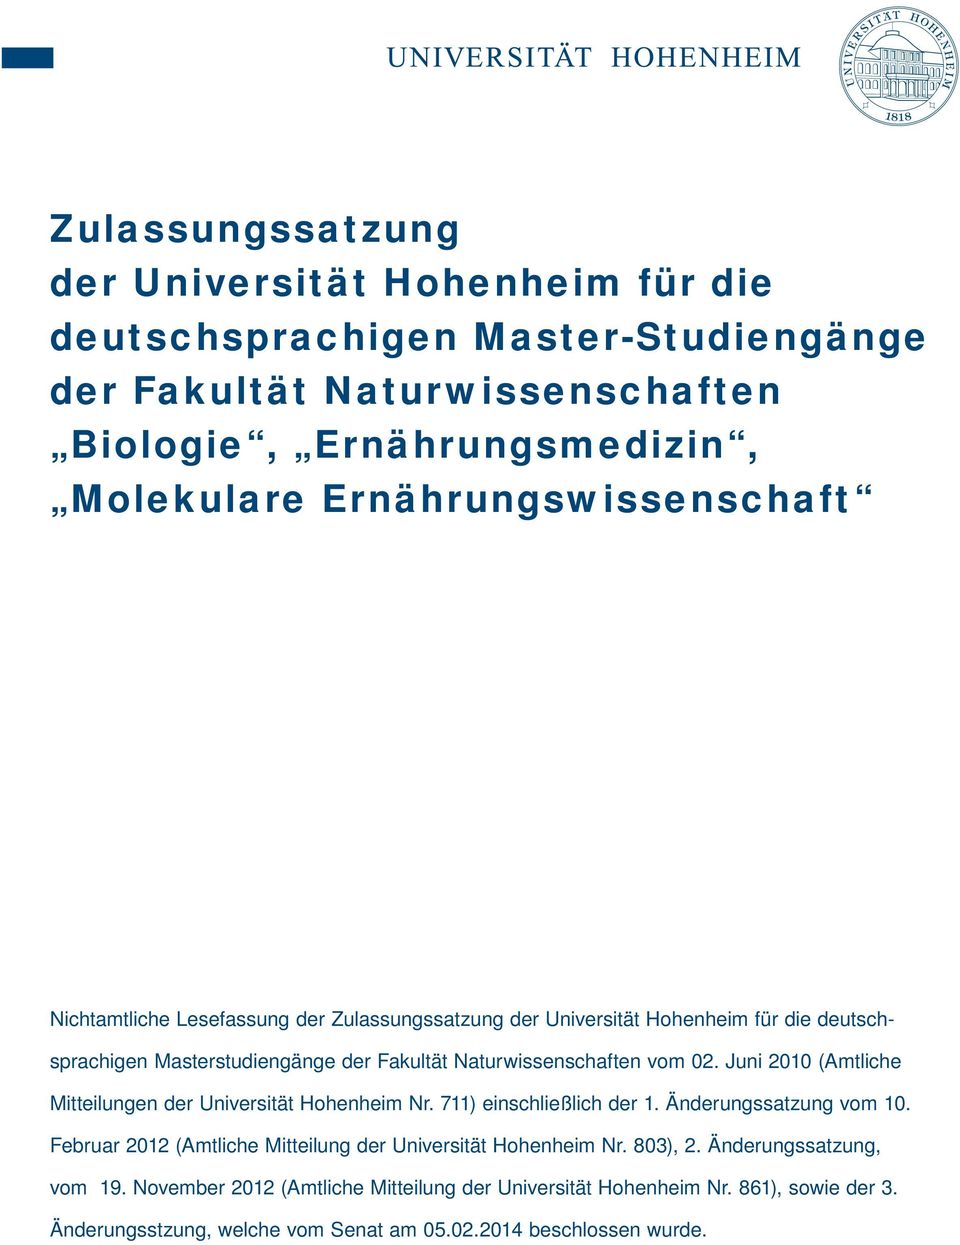 vom 02. Juni 2010 (Amtliche Mitteilungen der Universität Hohenheim Nr. 711) einschließlich der 1. Änderungssatzung vom 10.